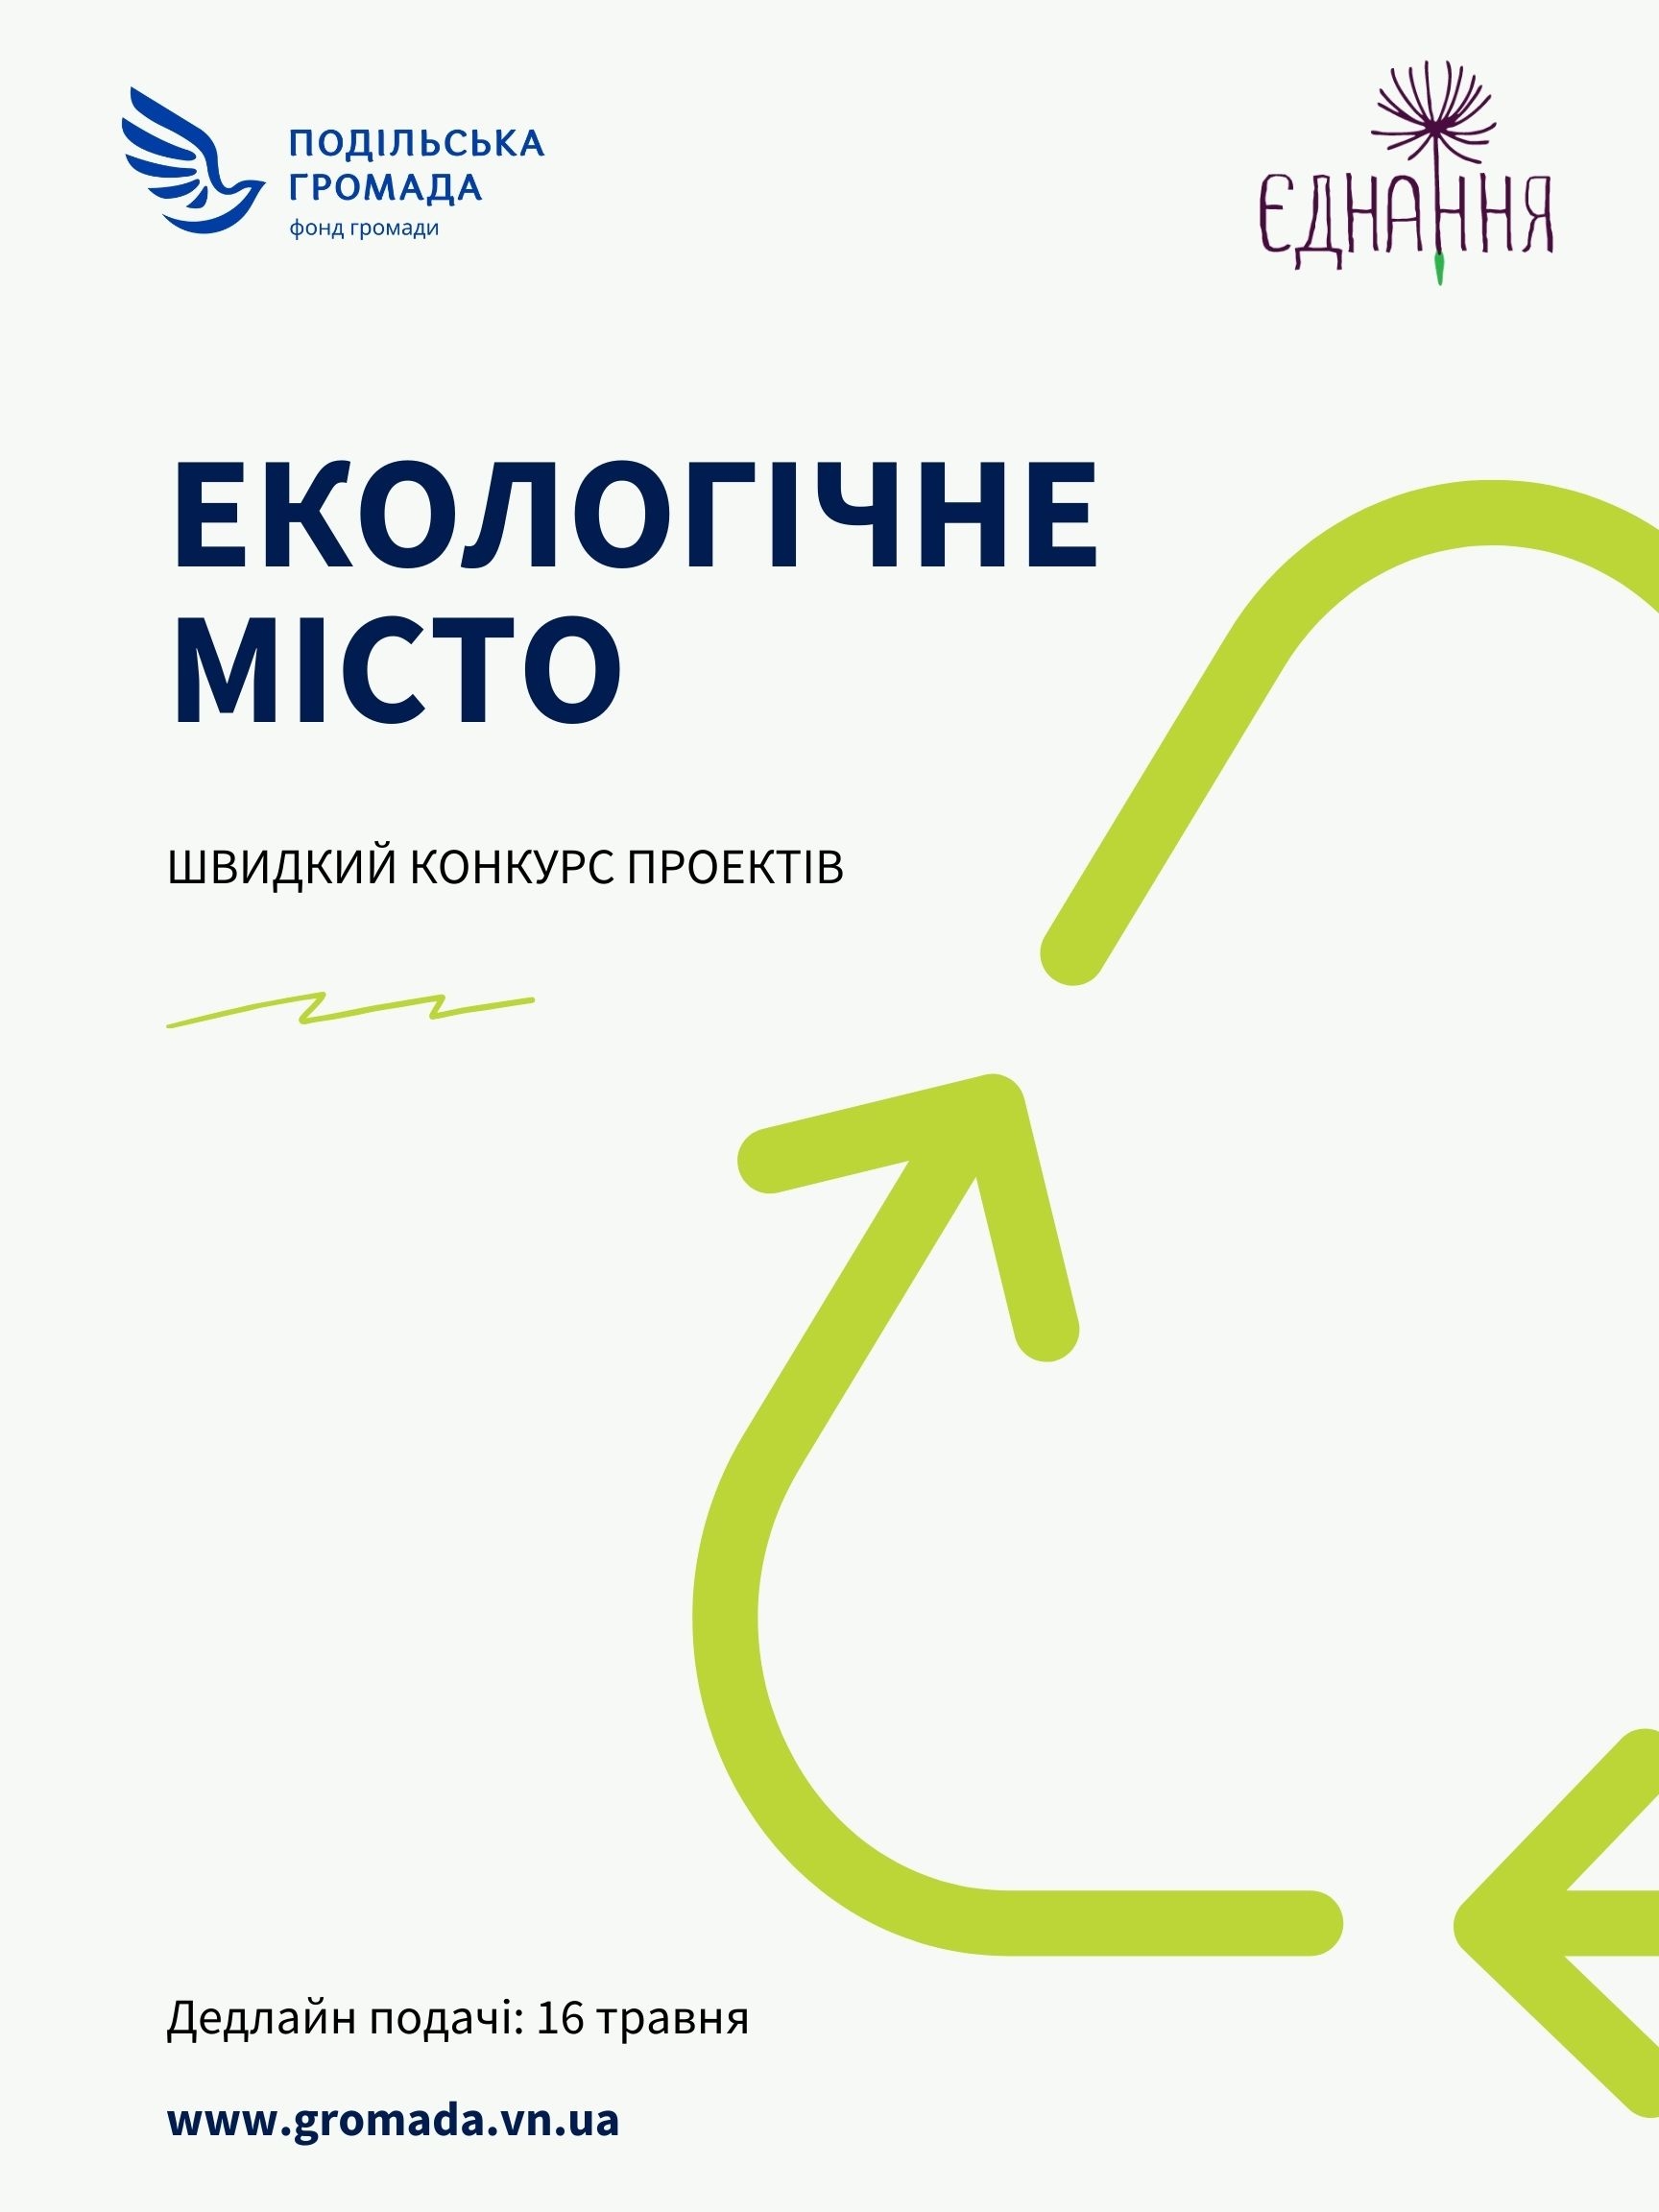 У Вінниці оголосили швидкий конкурс проектів на екологічну тематику